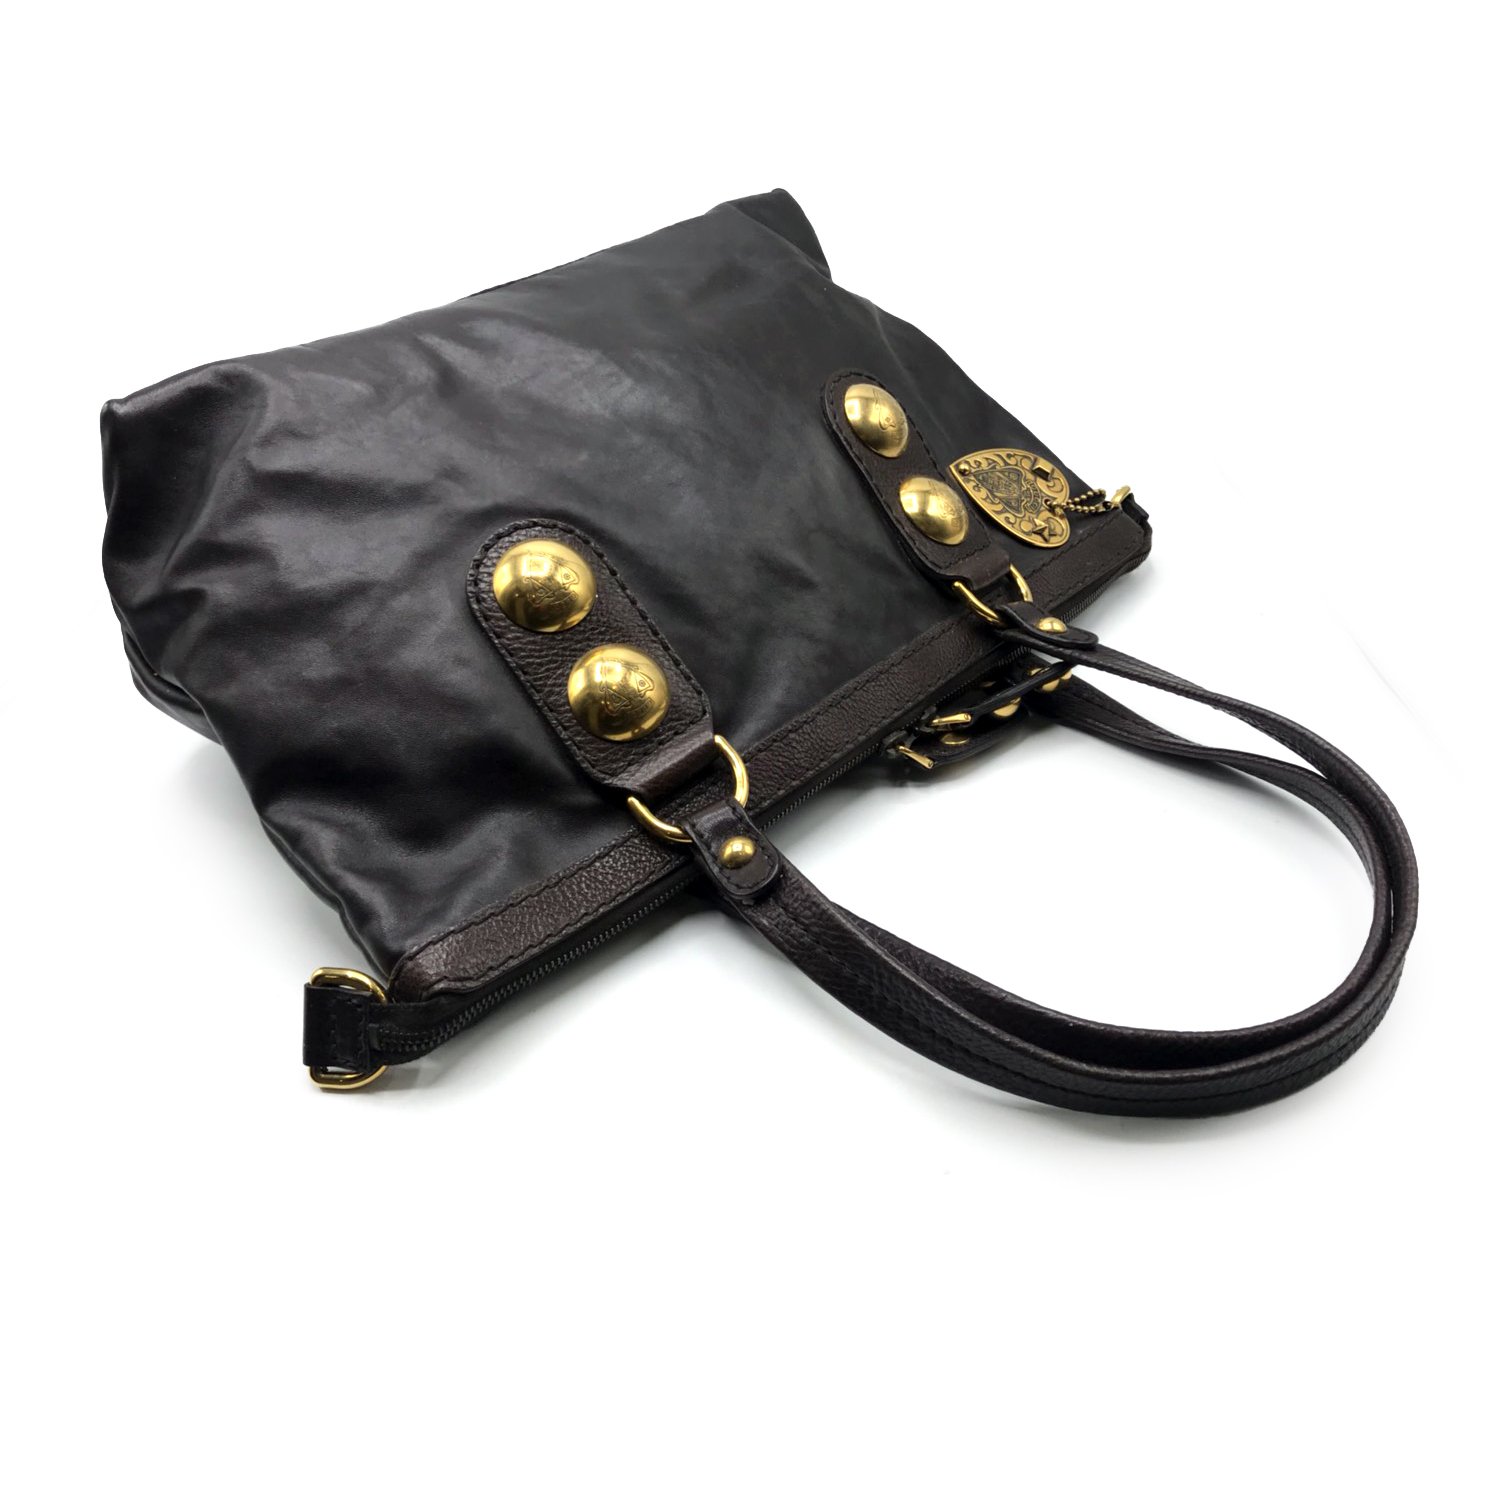 Used Gucci Vintage Handbag in Darkbrown Leather GHW